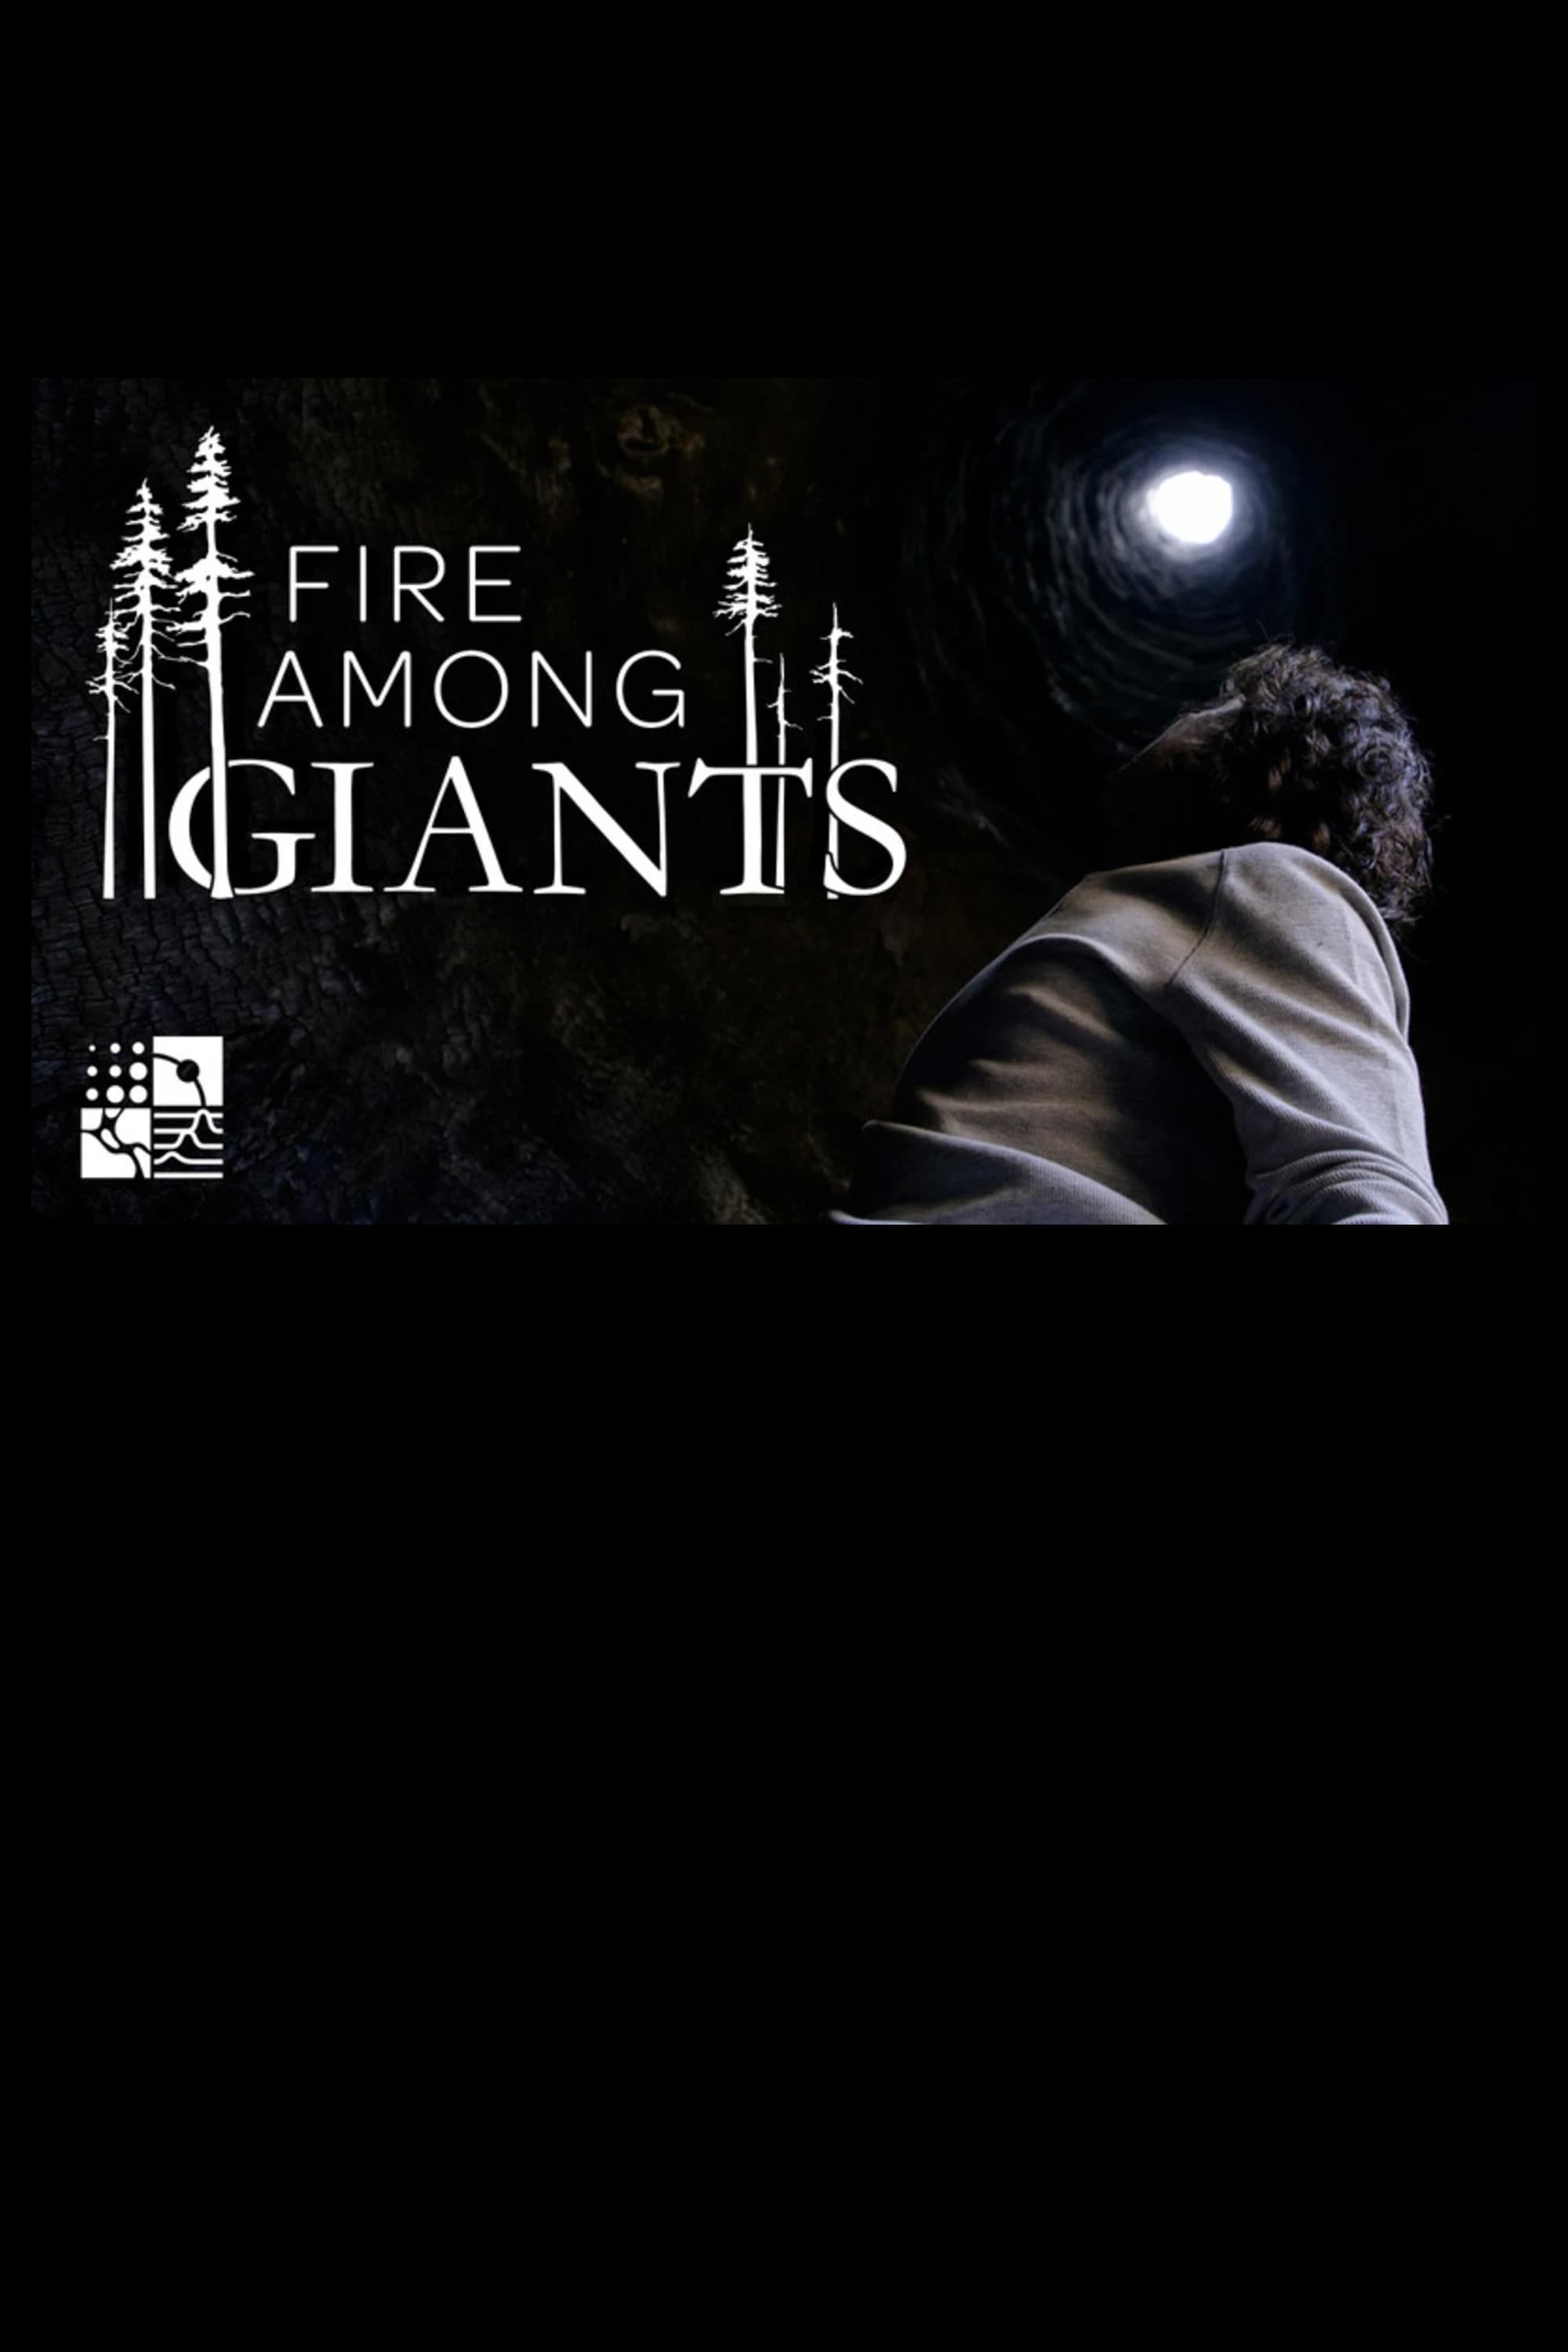 Fire Among Giants